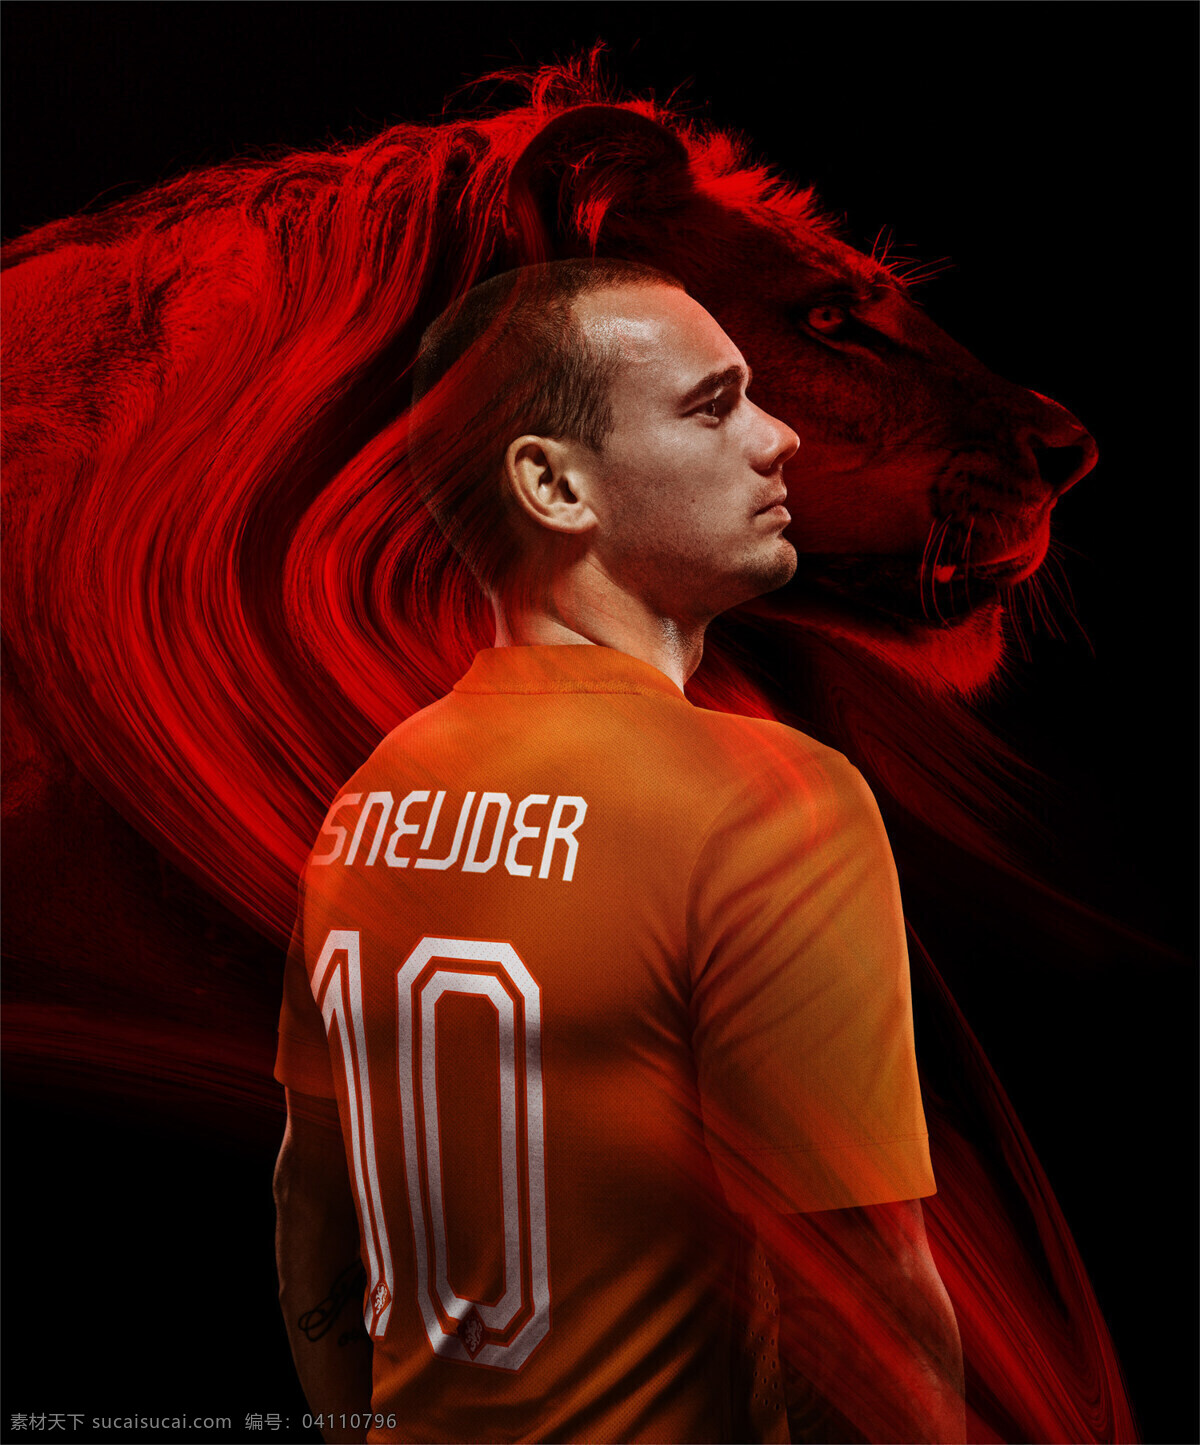 荷兰 国家队 队服 广告 nike 宣传 体育运动 文化艺术